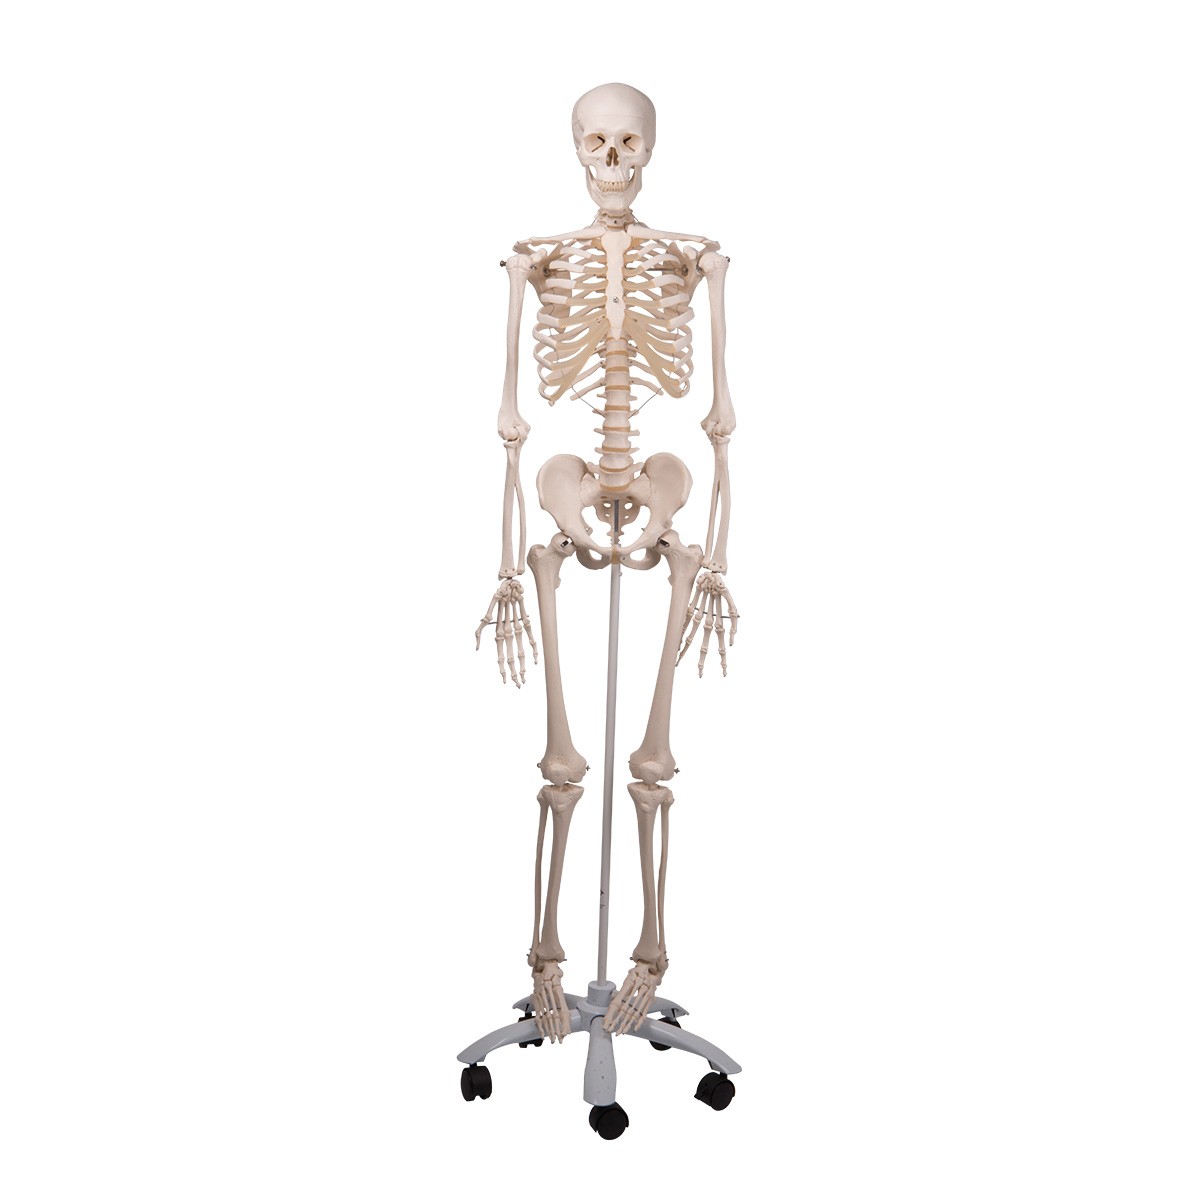 Miglior prezzo di fabbrica del modello di scheletro anatomico